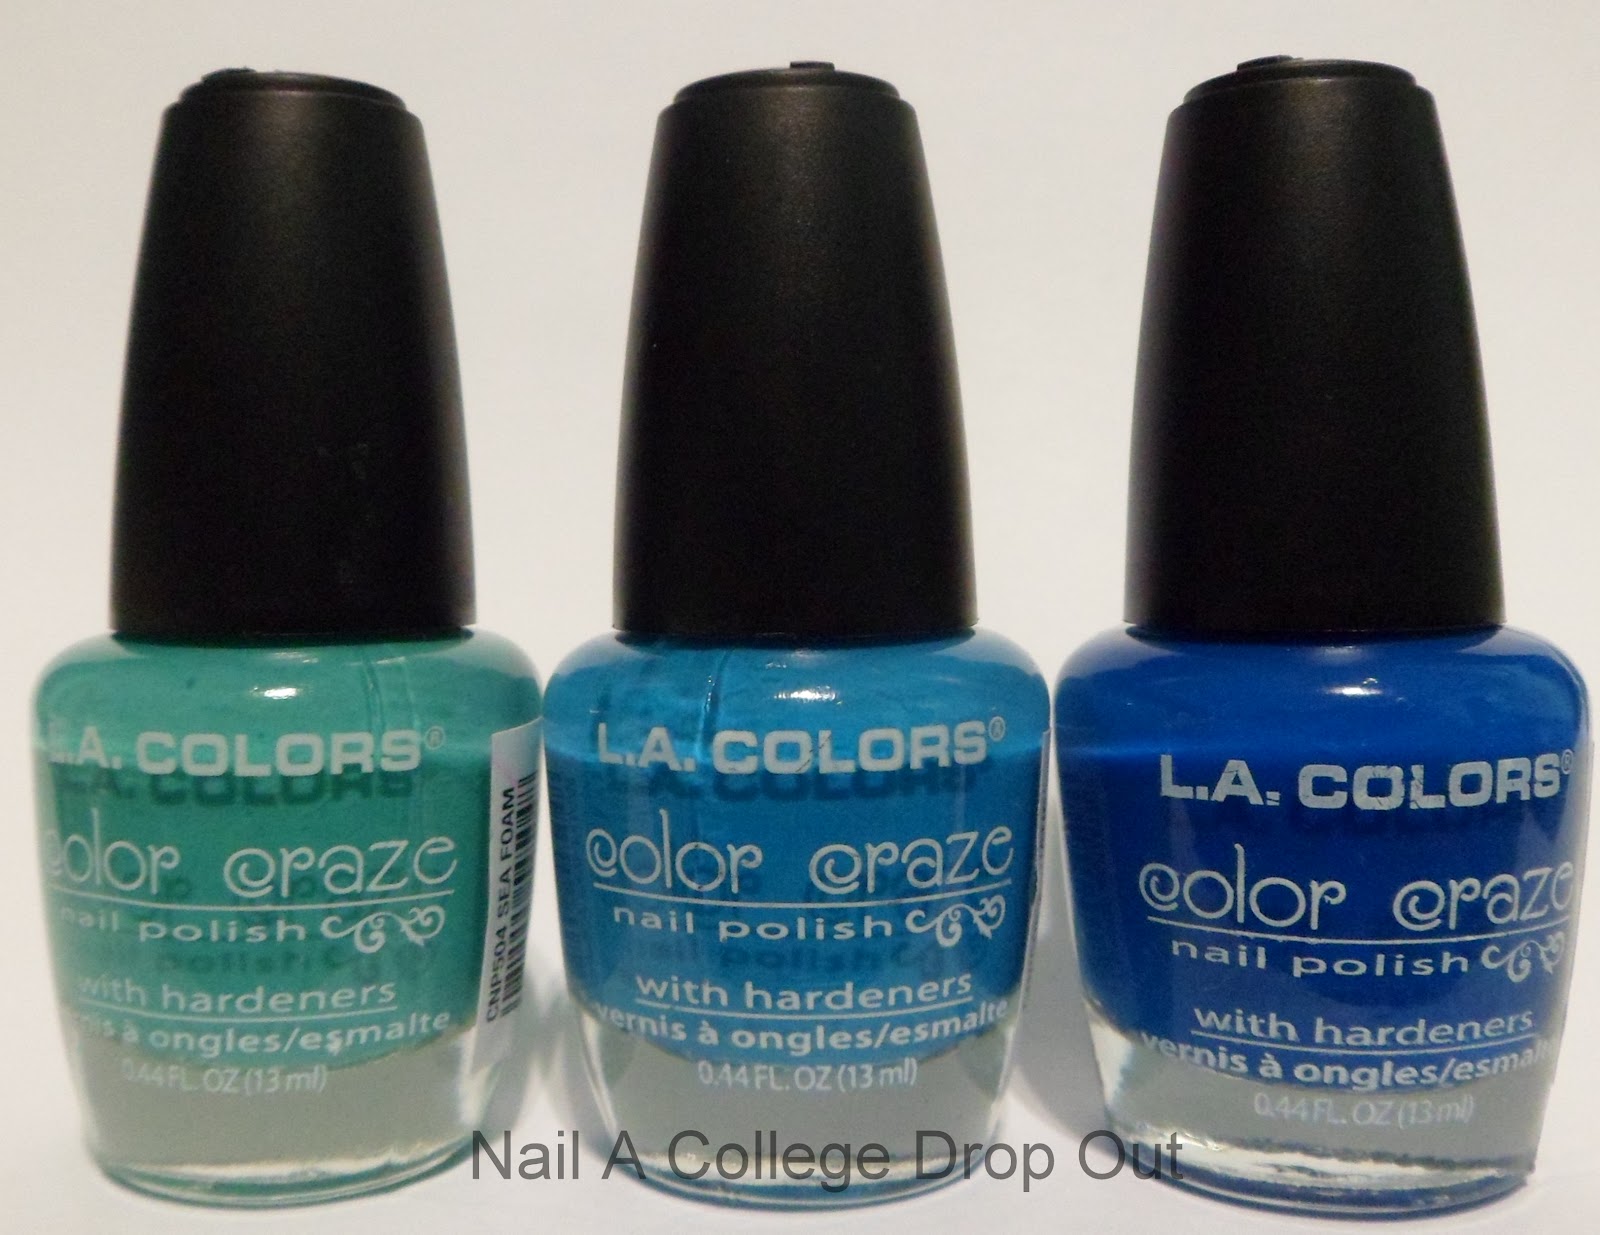 L.A. Colors Color Craze Nail Polish, 619 Live, 0.44 fl oz - wide 3